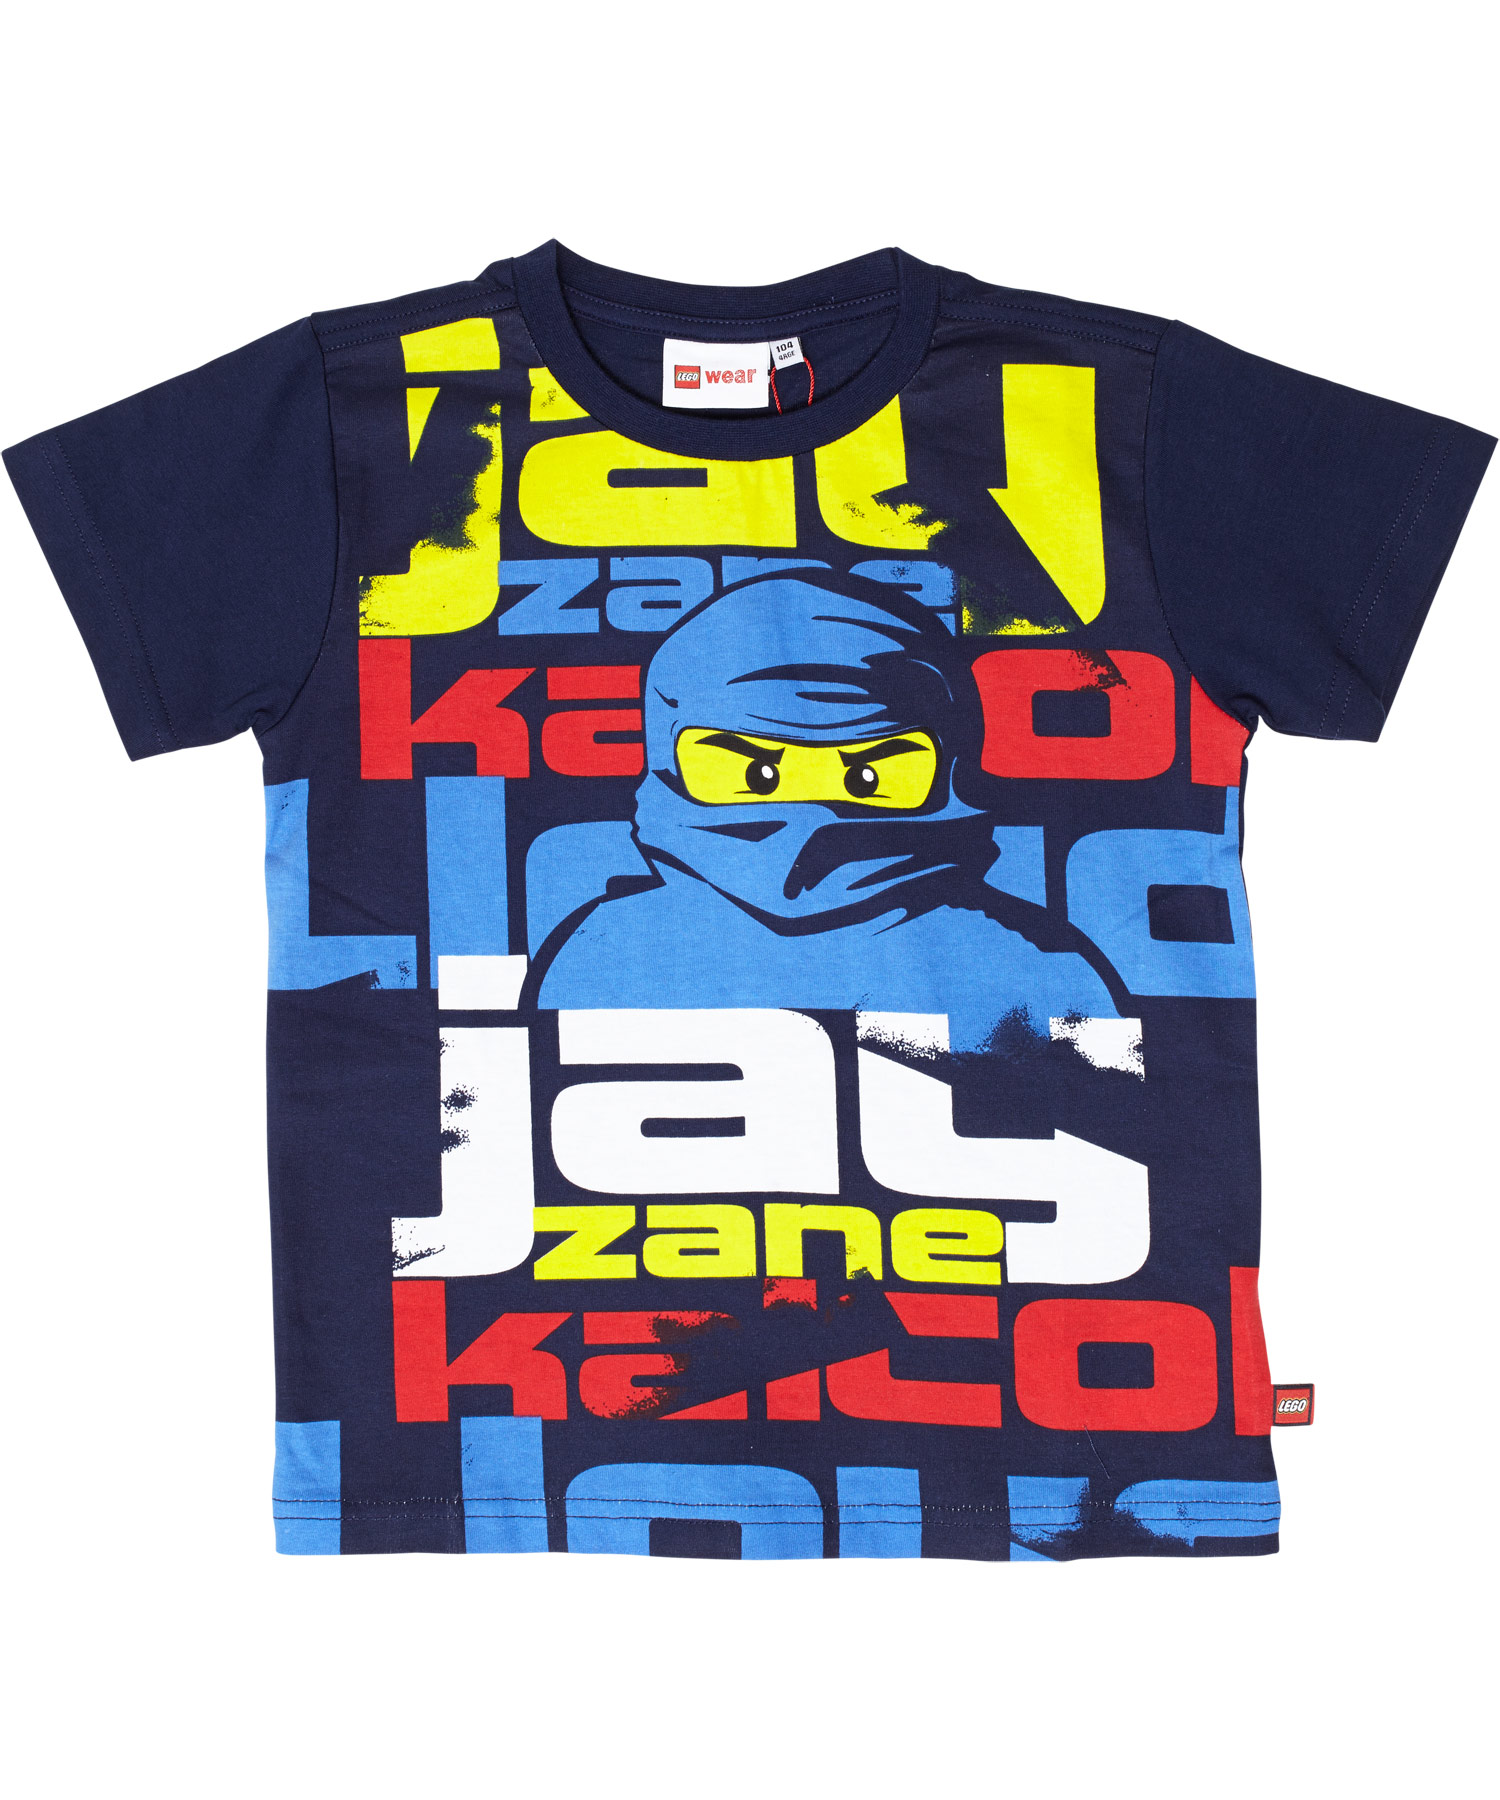 New! the Ninjago Jay, ninja blue navy LEGO with t-shirt